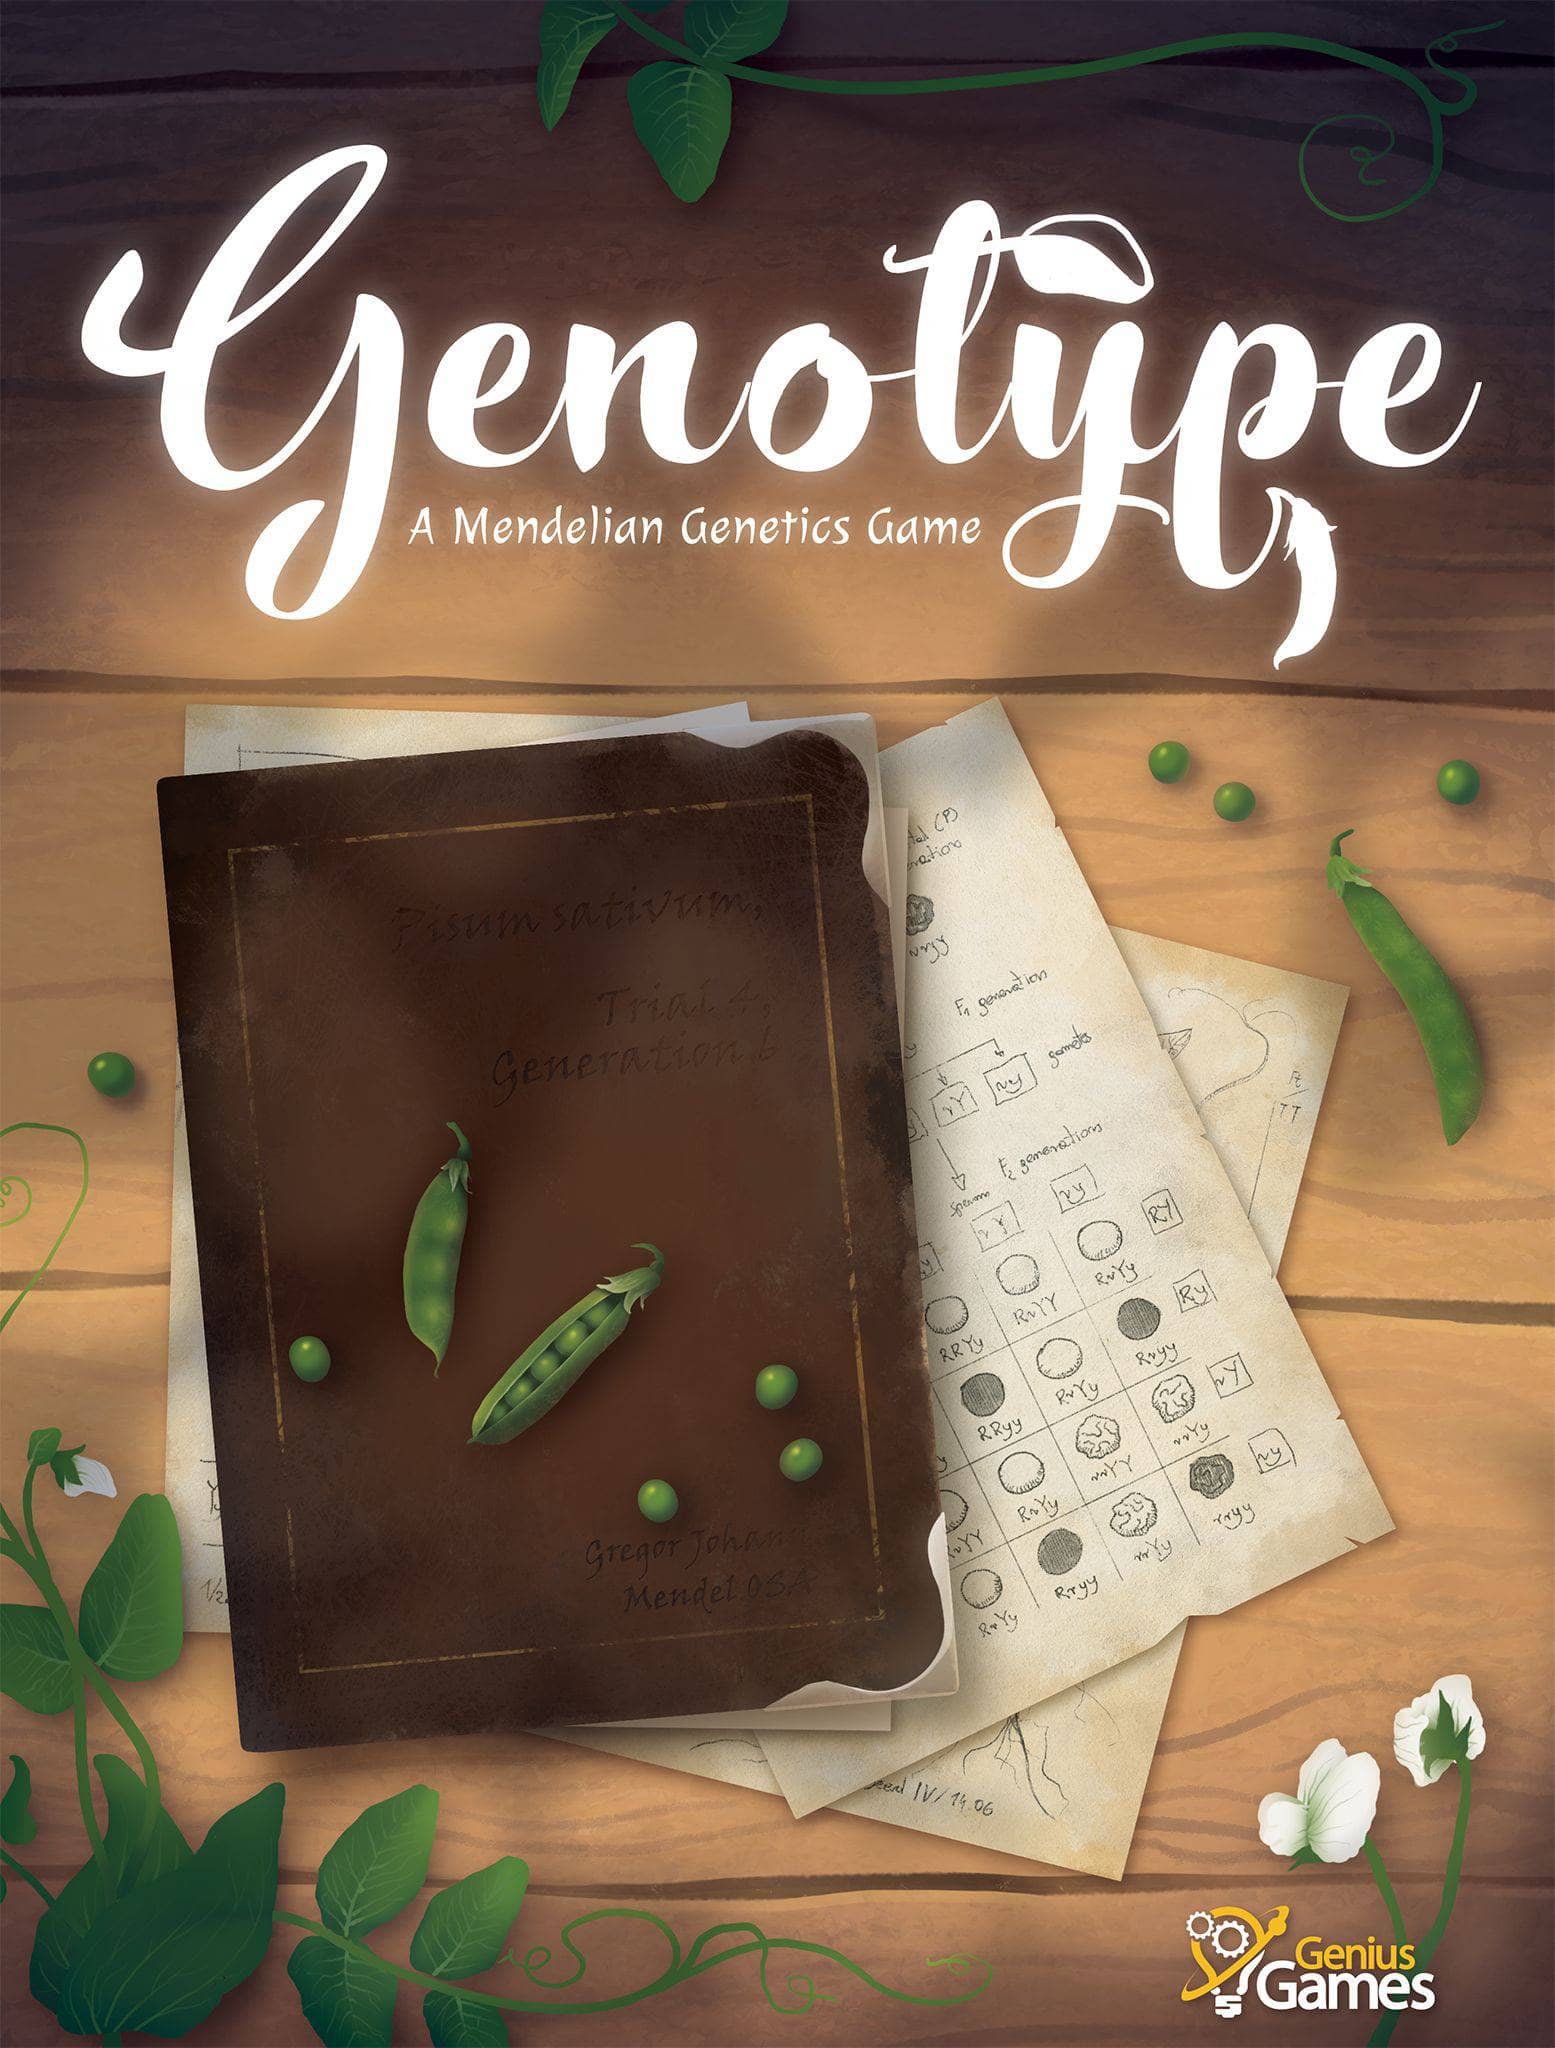 Genotyp: A Mendelian Genetics Game Collector's Edition Bundle (Kickstarter Special)